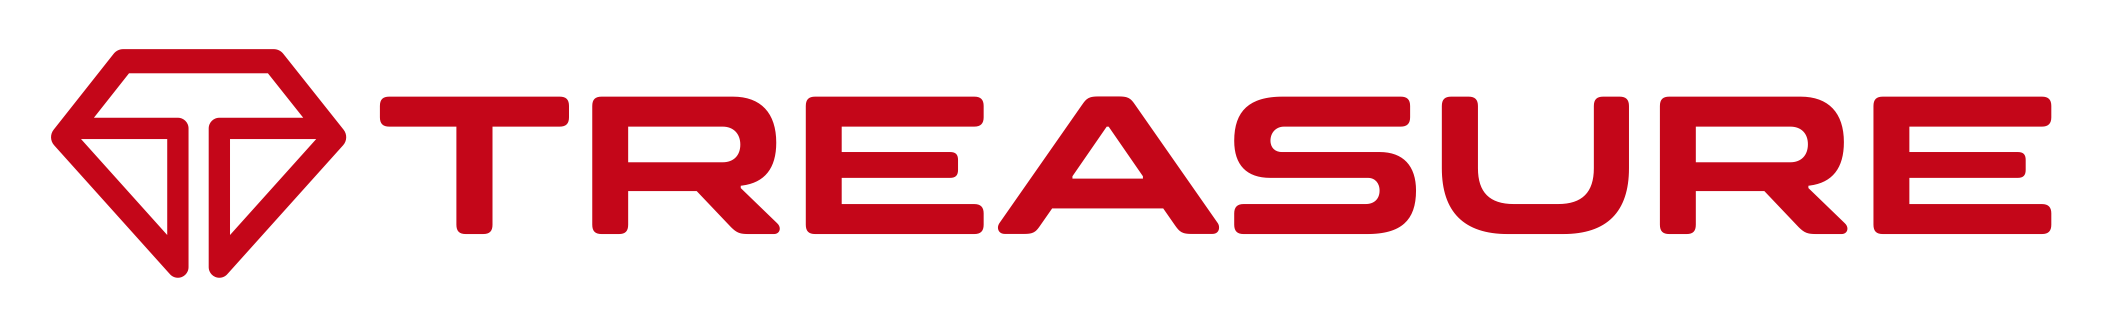 logo1_rec